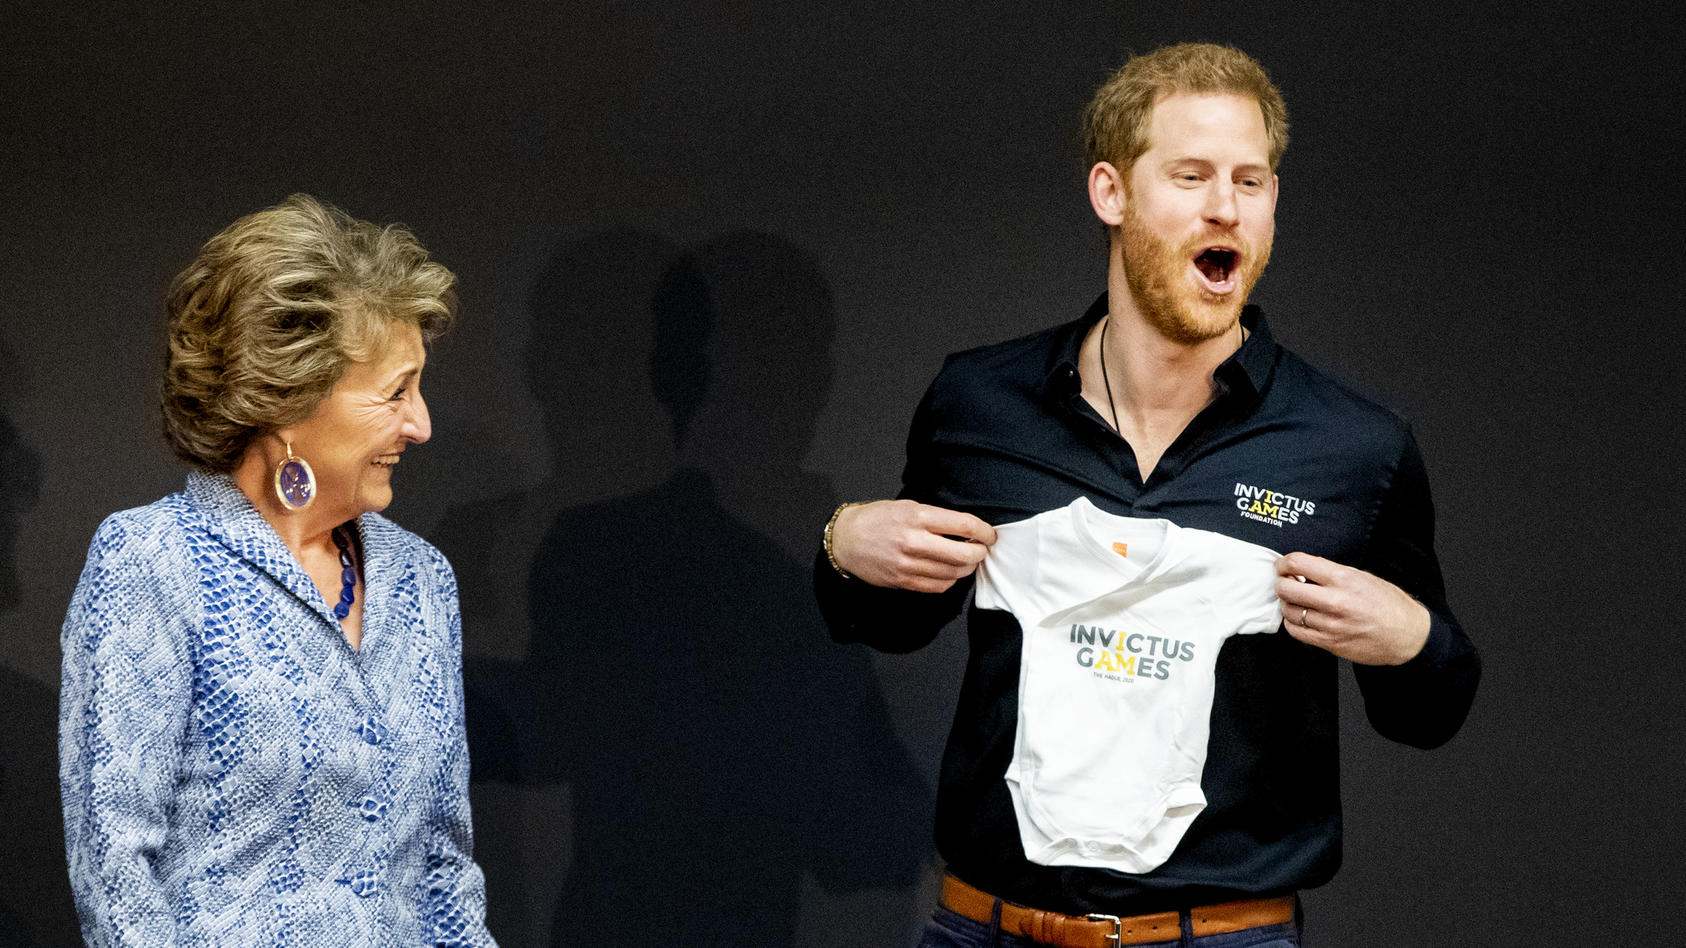 Da ist die Freude riesig: Prinz Harry bekommt einen Strampler für Archie überreicht.